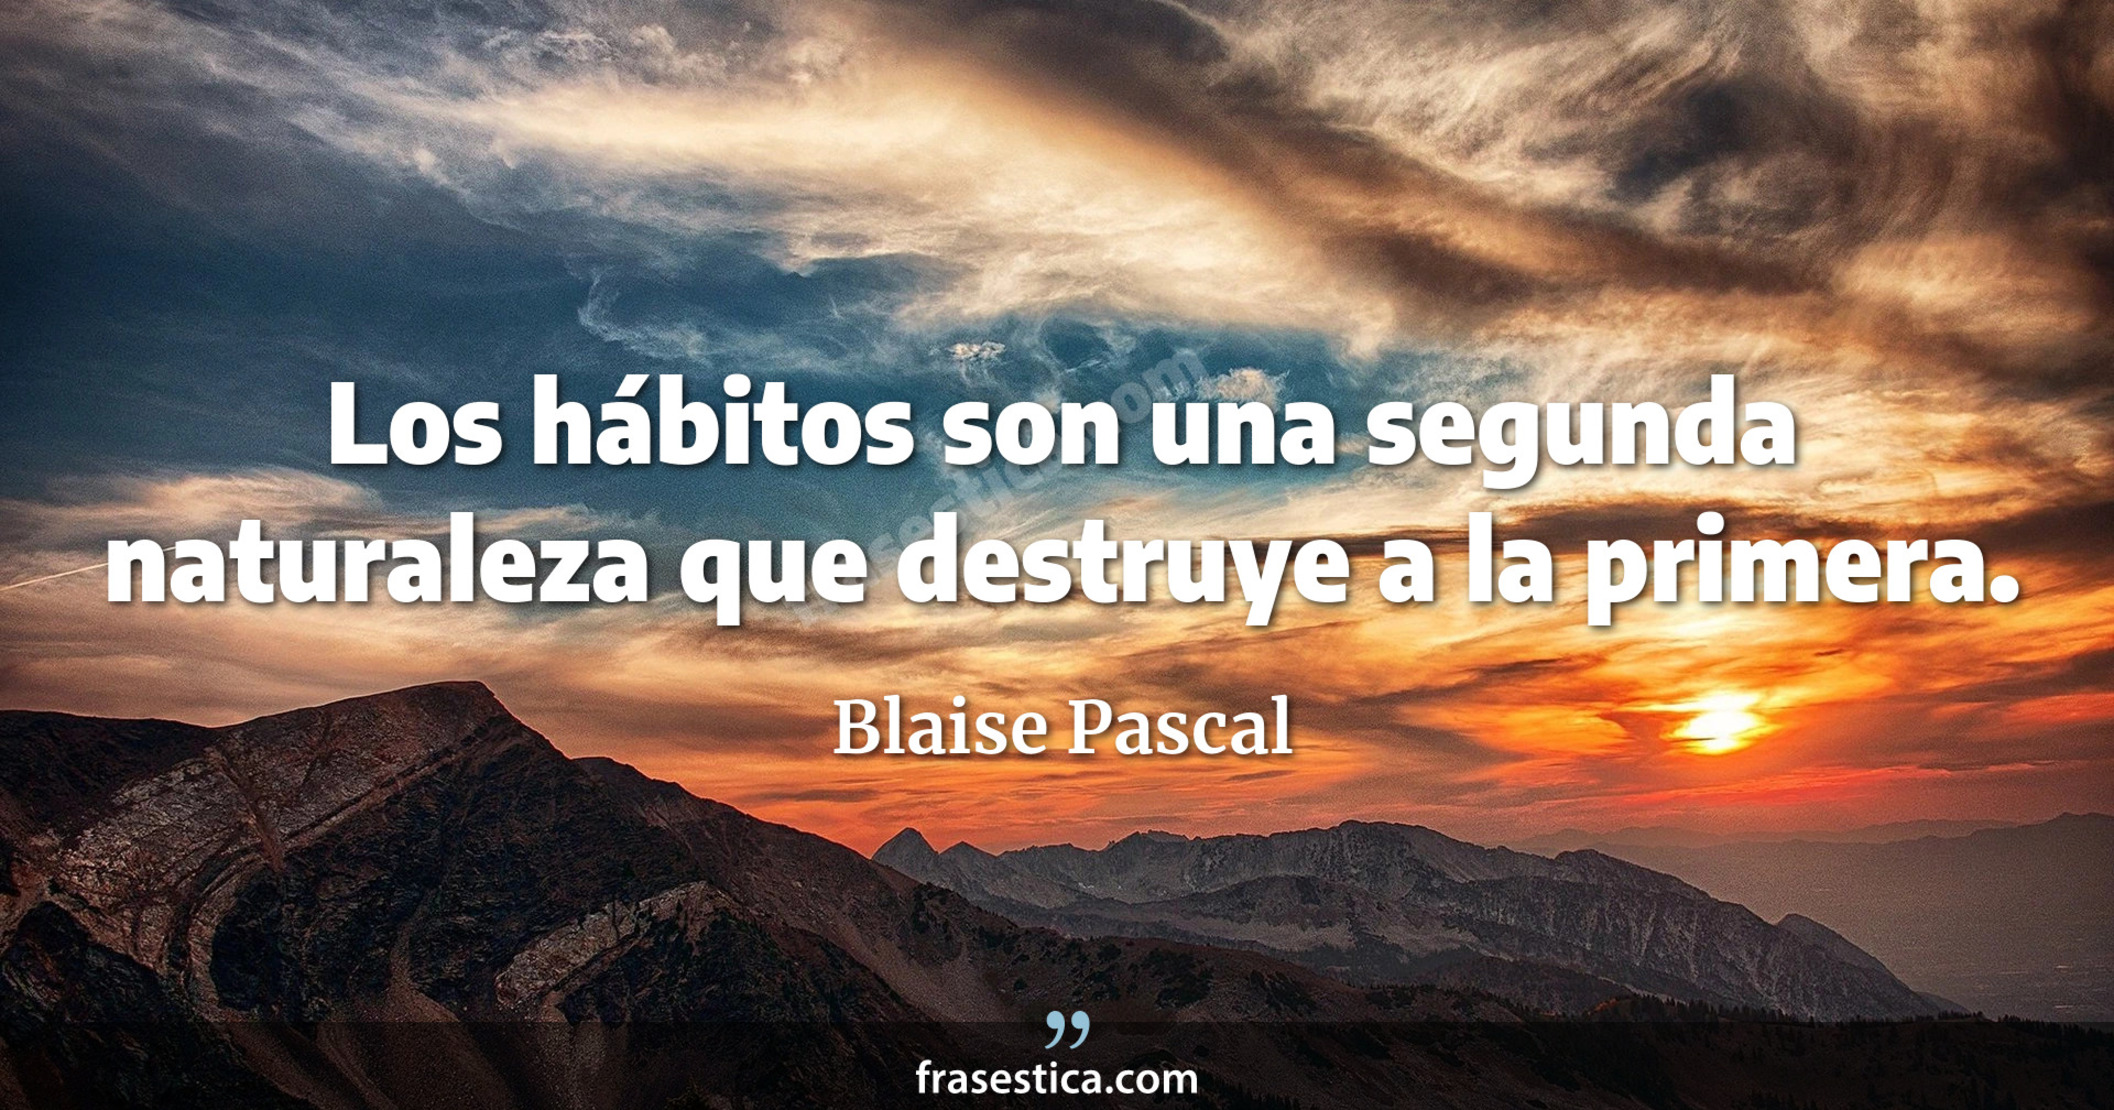 Los hábitos son una segunda naturaleza que destruye a la primera. - Blaise Pascal